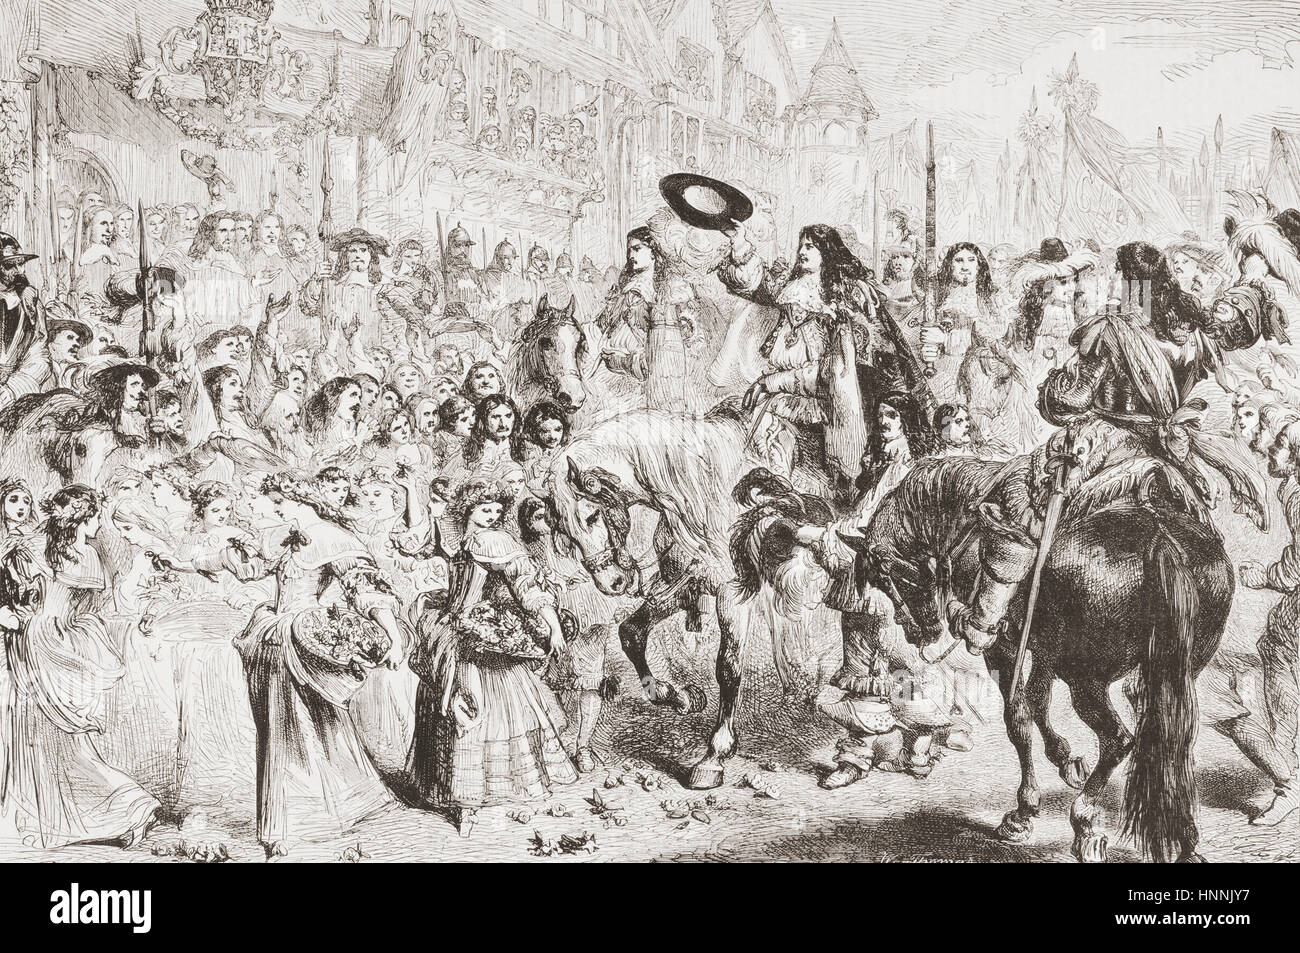 La restaurazione della monarchia nel 1660. Carlo II, 1630 - 1685. Re d'Inghilterra, in Scozia e in Irlanda. Da L'Univers illustre, pubblicato a giugno 1863 Foto Stock